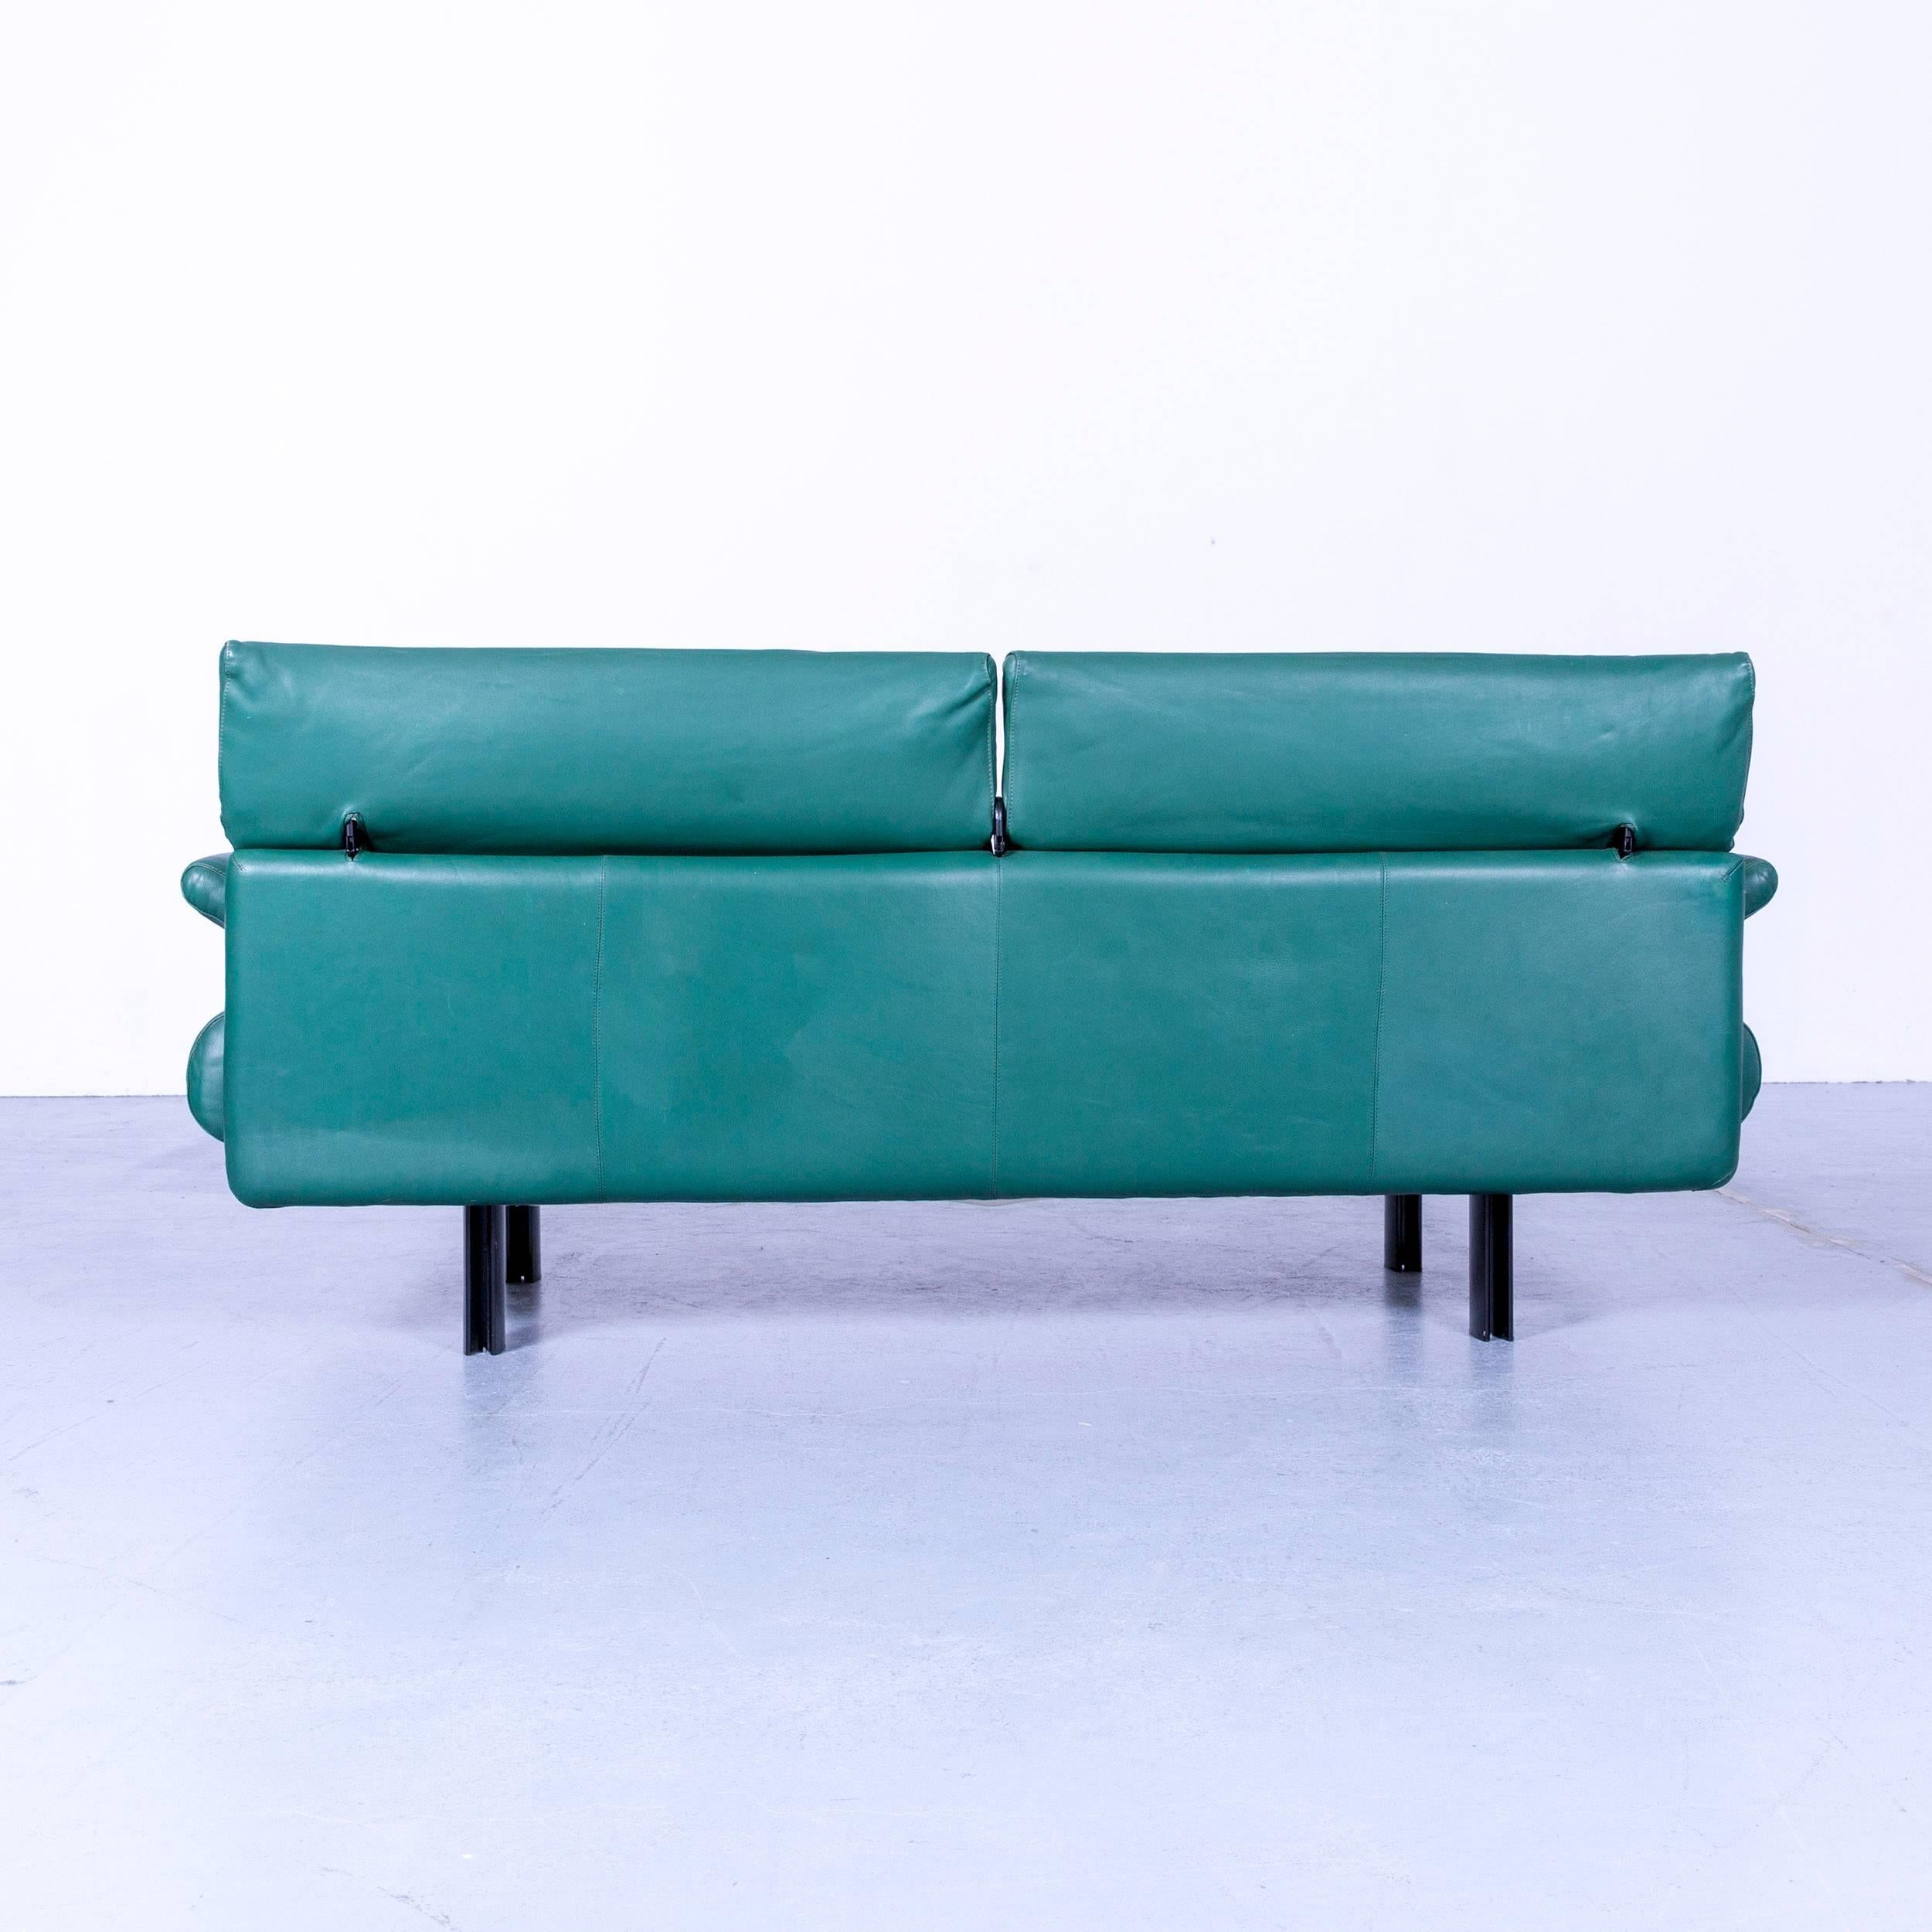 B&B Italia Alanda Leather Sofa Turqoise Blue Two-Seat 4